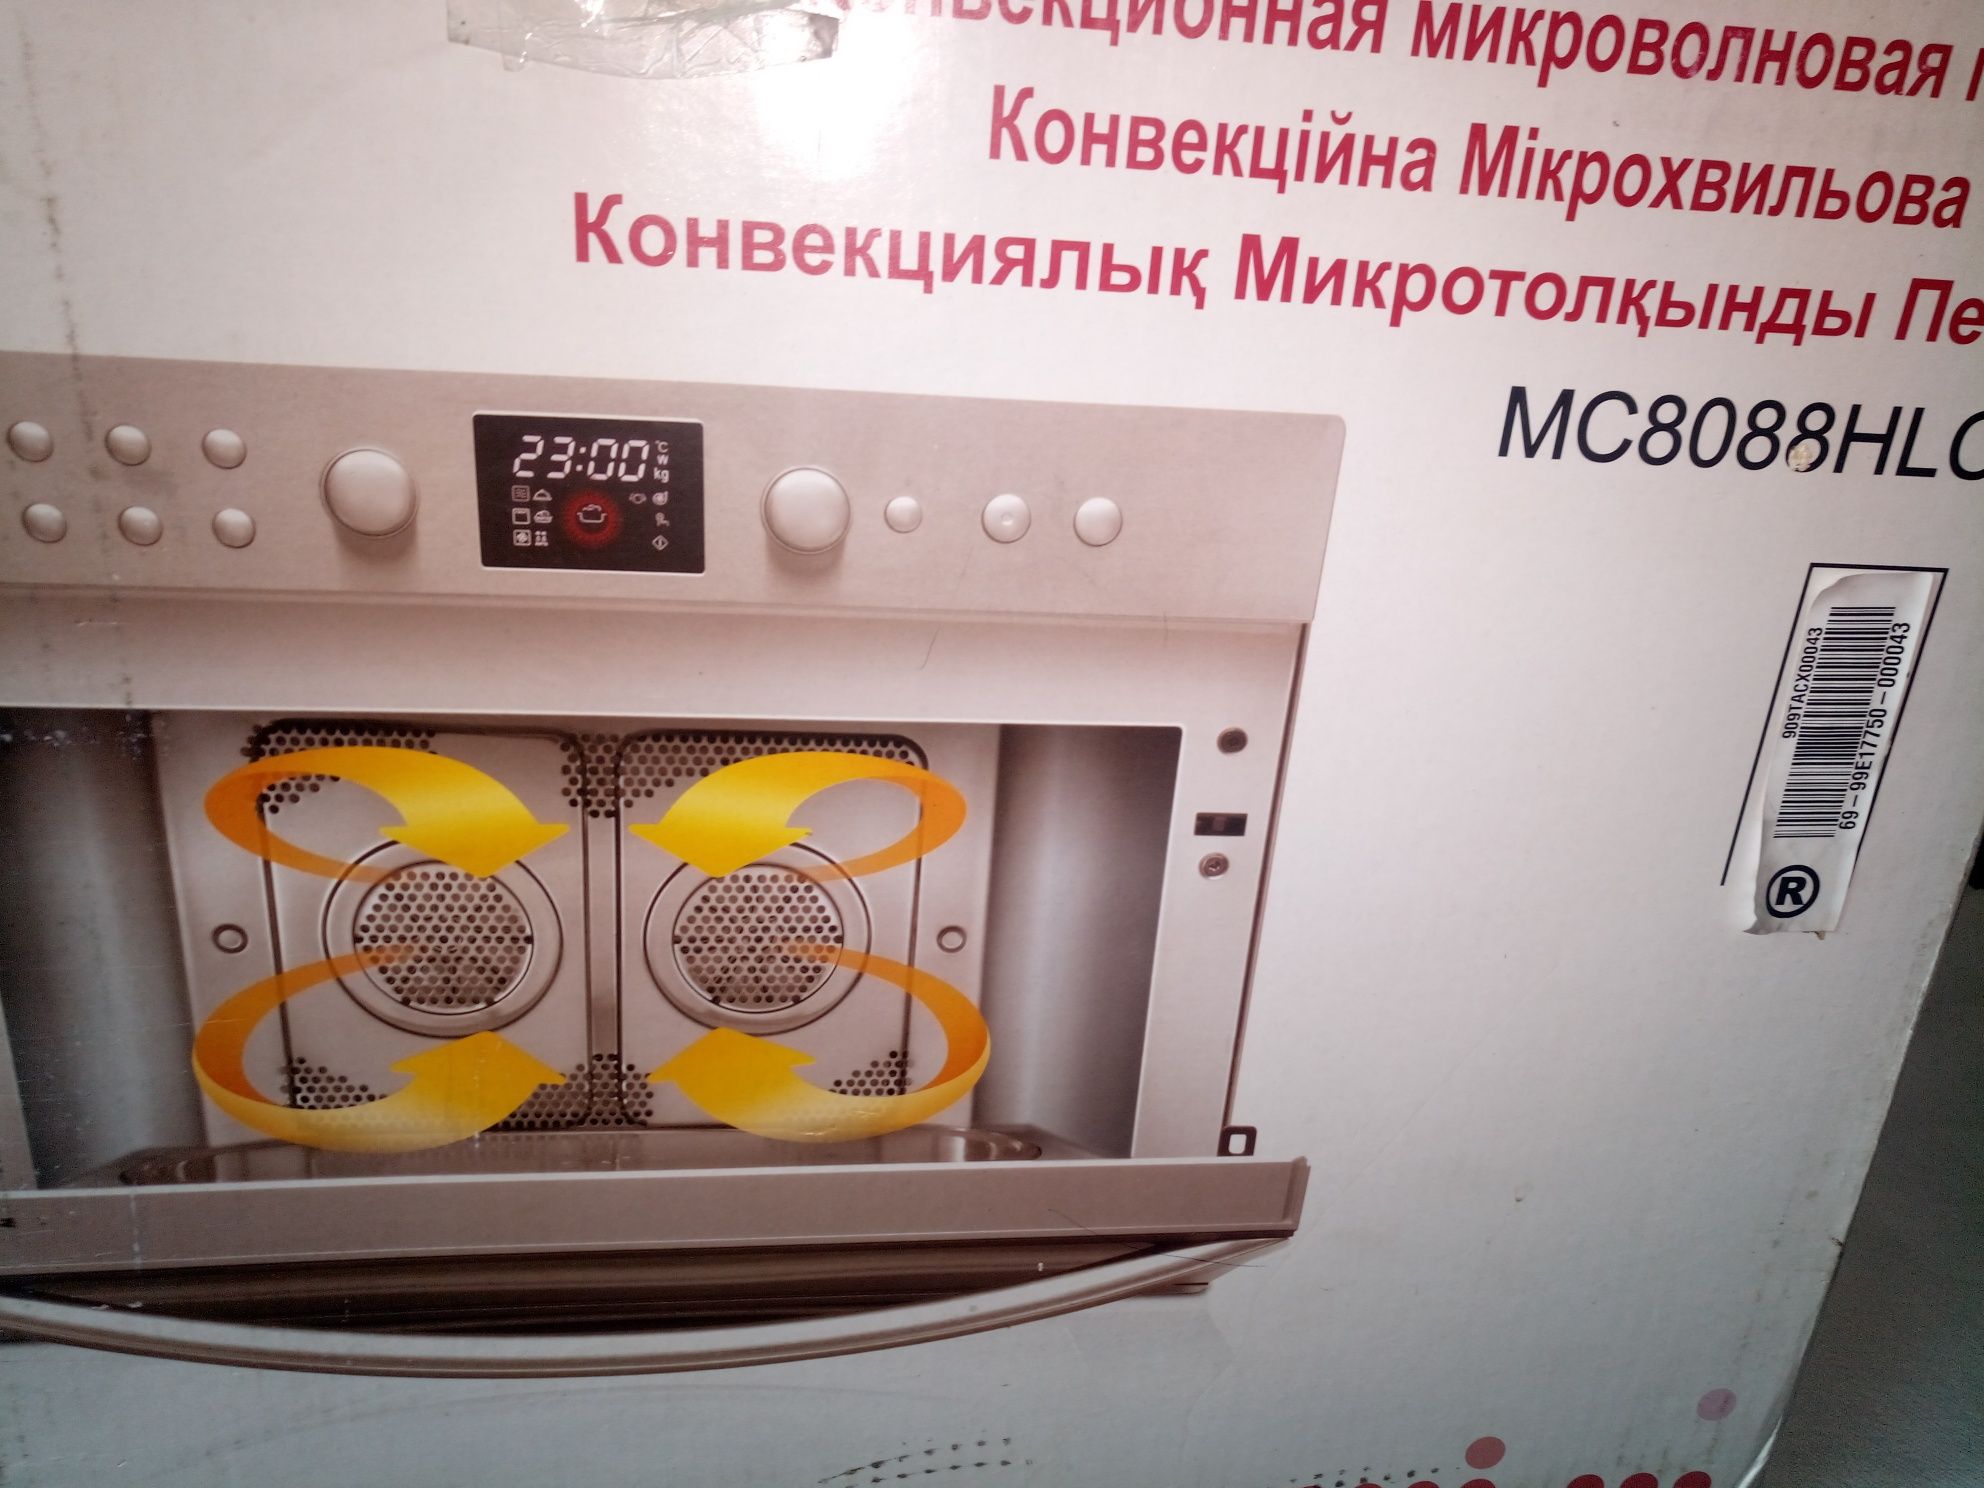 Продам Конвекционная микроволновая печь